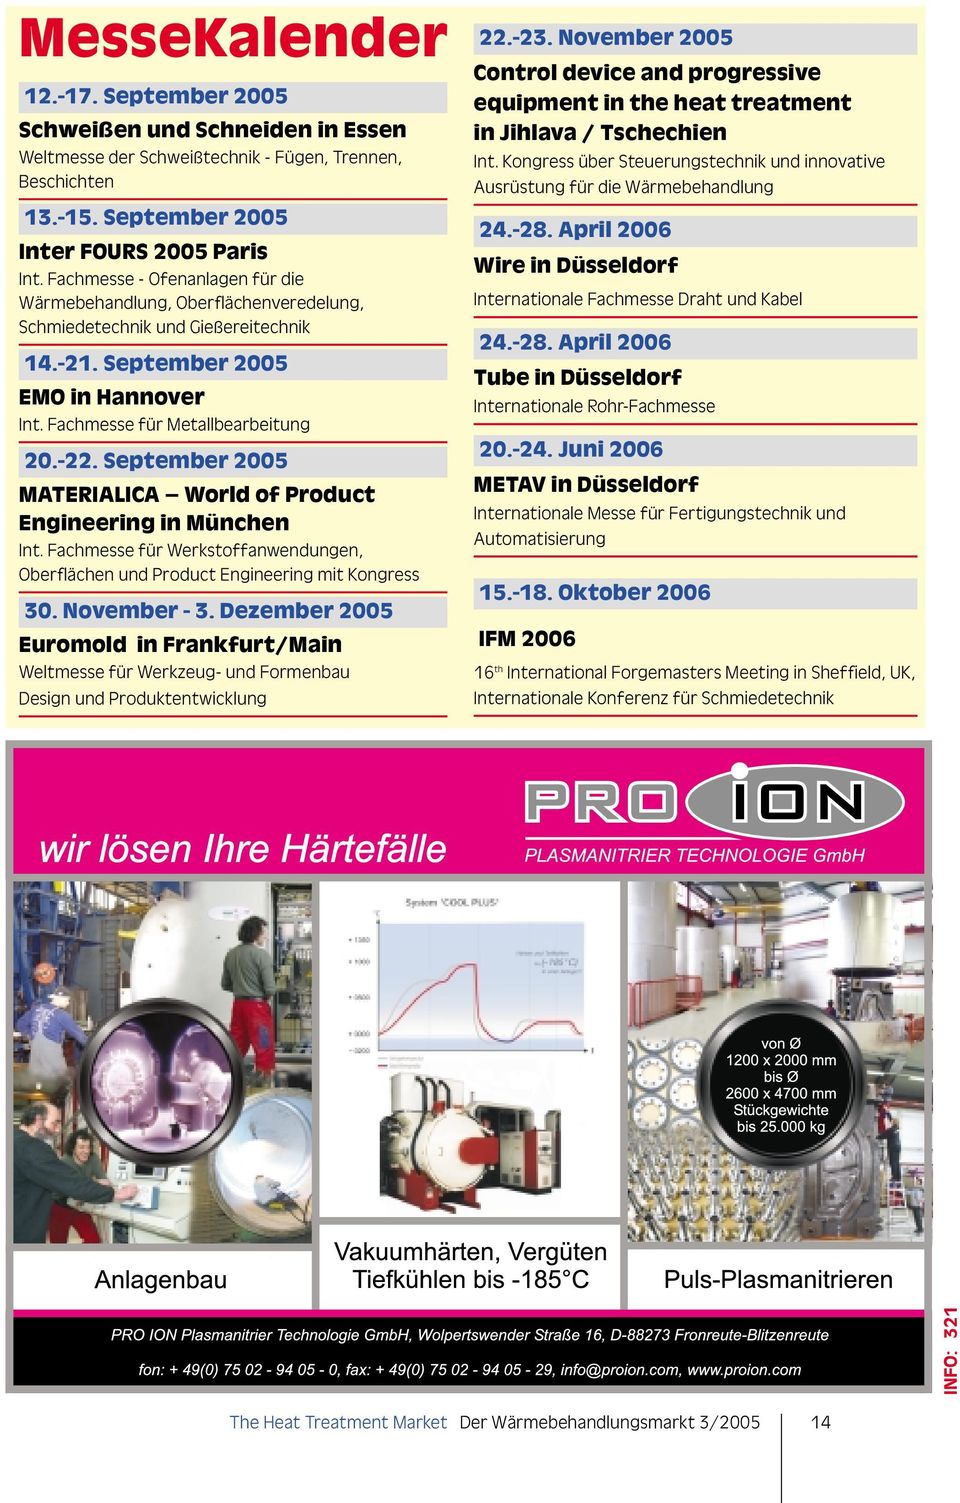 September 2005 MATERIALICA World of Product Engineering in München Int. Fachmesse für Werkstoffanwendungen, Oberflächen und Product Engineering mit Kongress 30. November - 3.